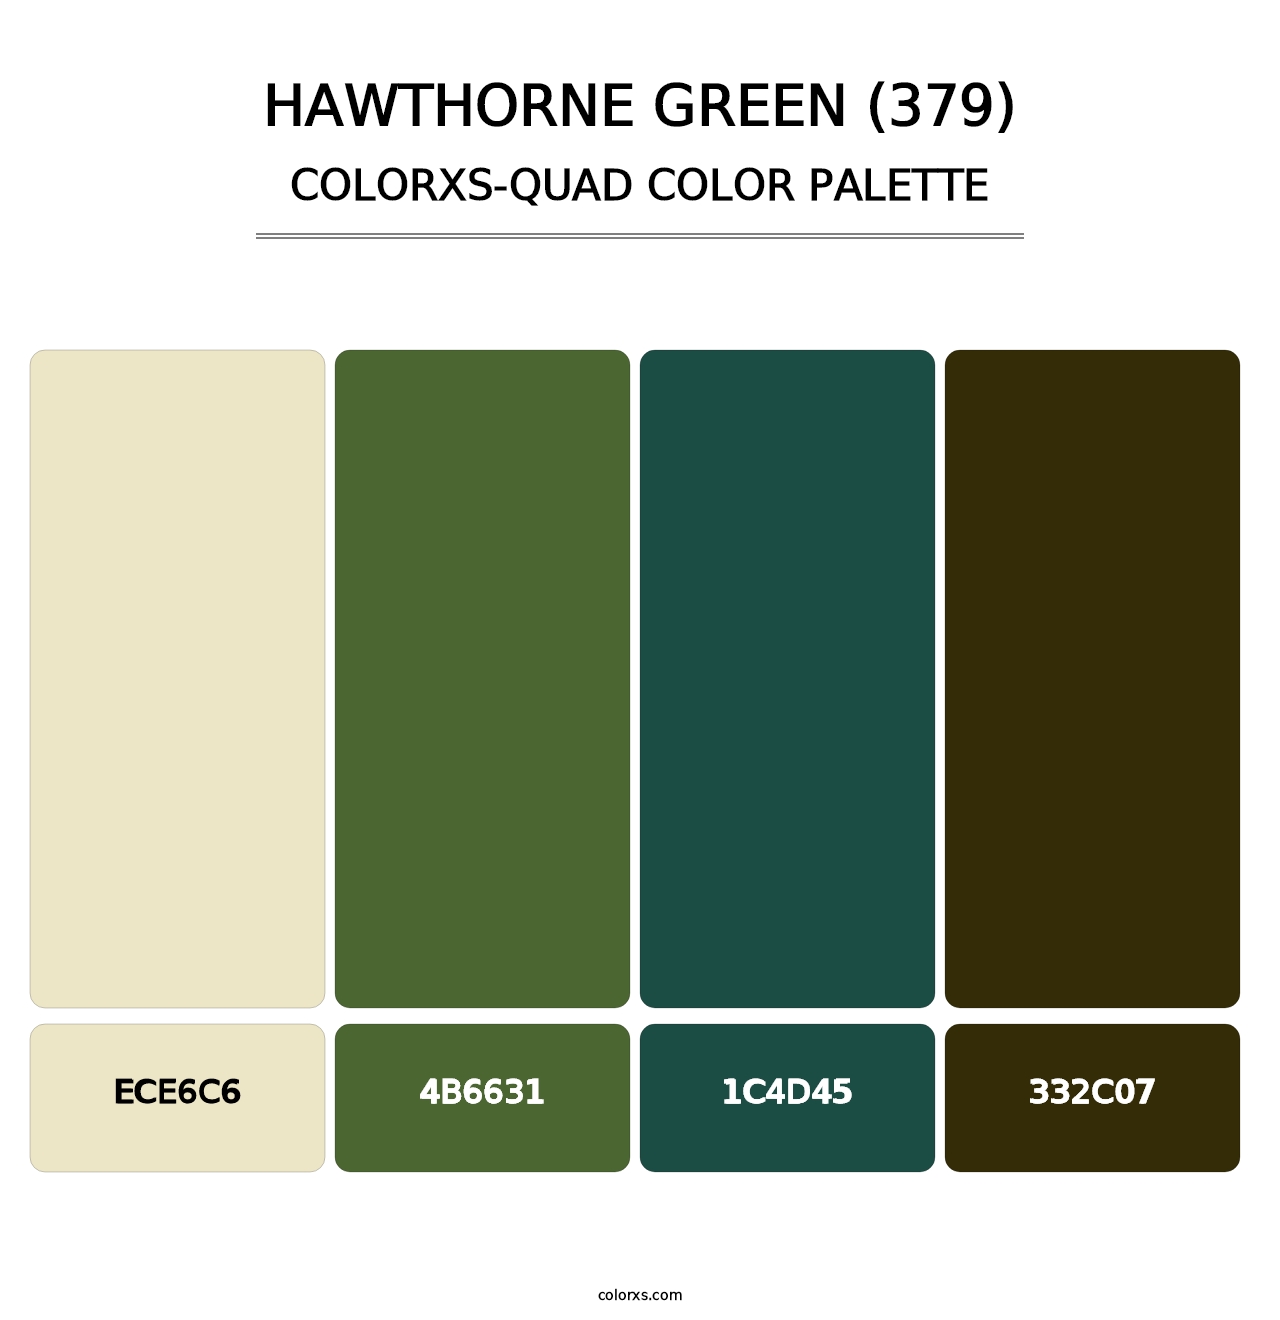 Hawthorne Green (379) - Colorxs Quad Palette